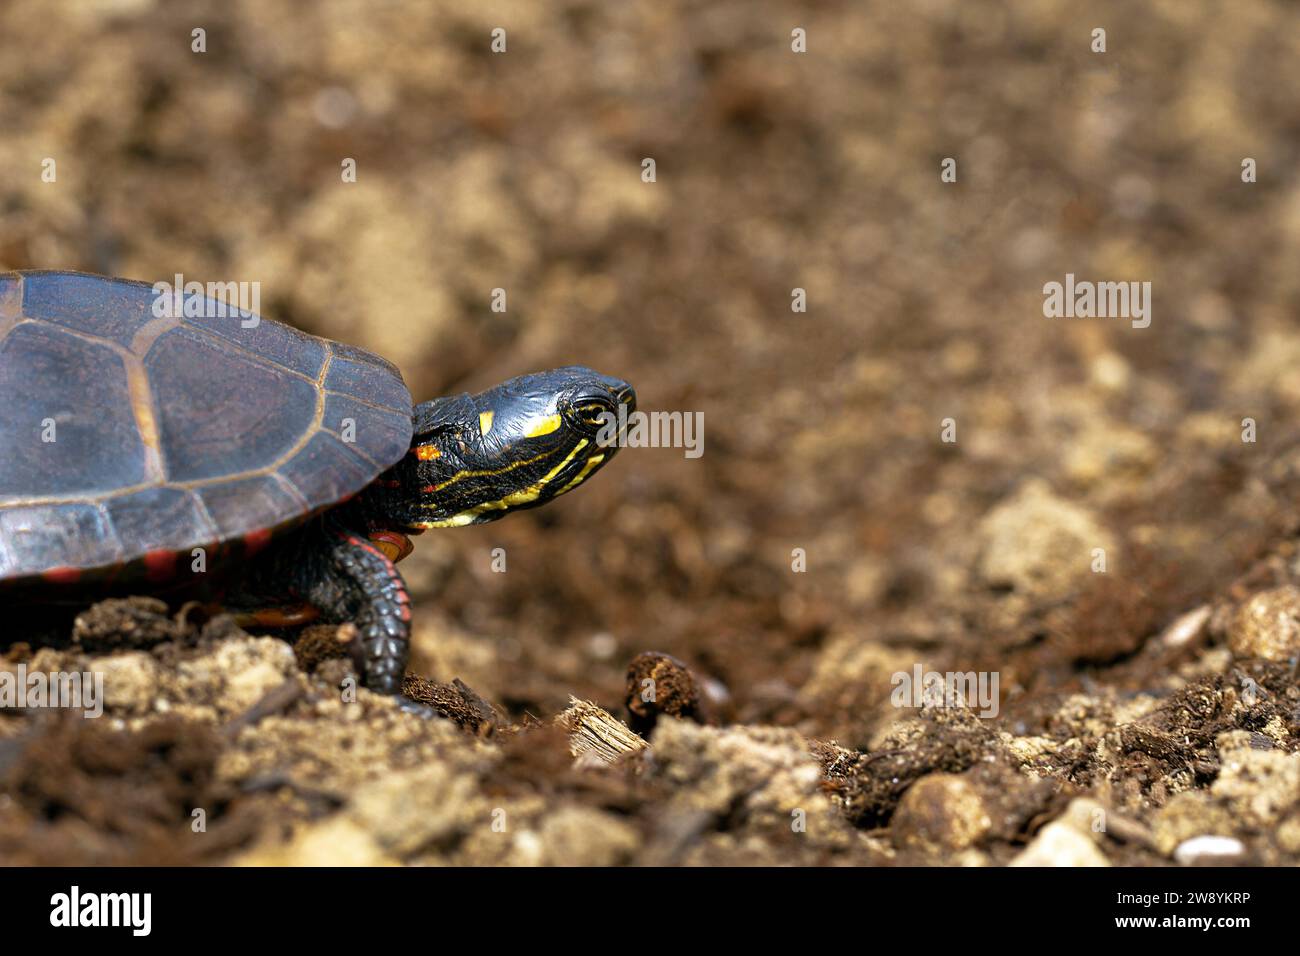 Östliche malerische Schildkröte (Chrysemys picta, Emydidae), entzogen - Valenussets, USA auf dem Boden, mit dem Kopf nach vorne gerichtet. Konzept. Schauen Sie nicht zurück Stockfoto